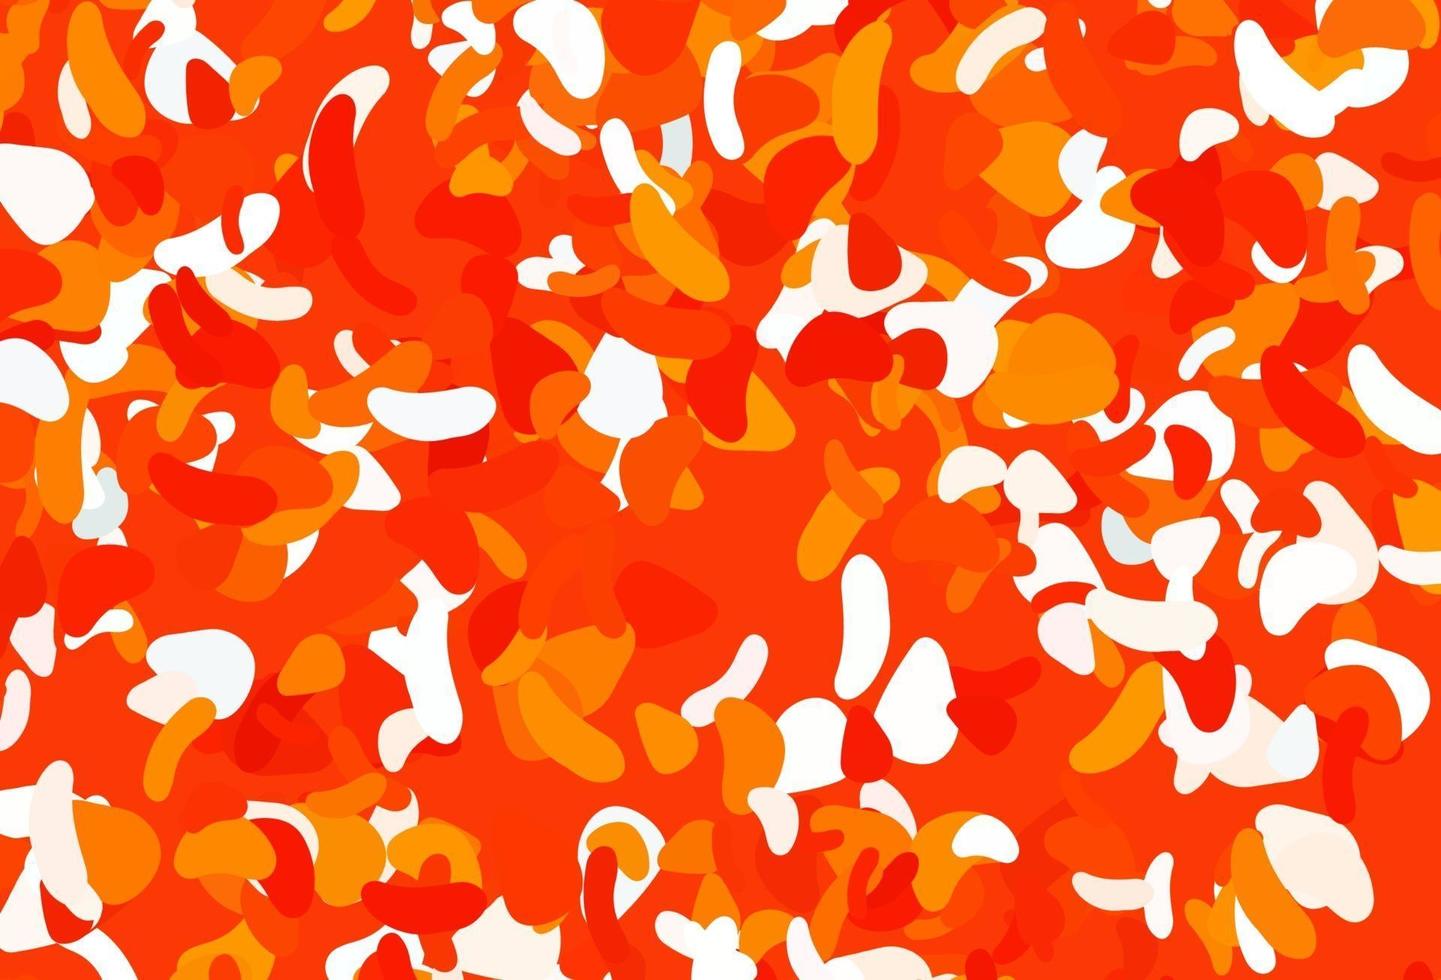 padrão de vetor laranja claro com formas caóticas.